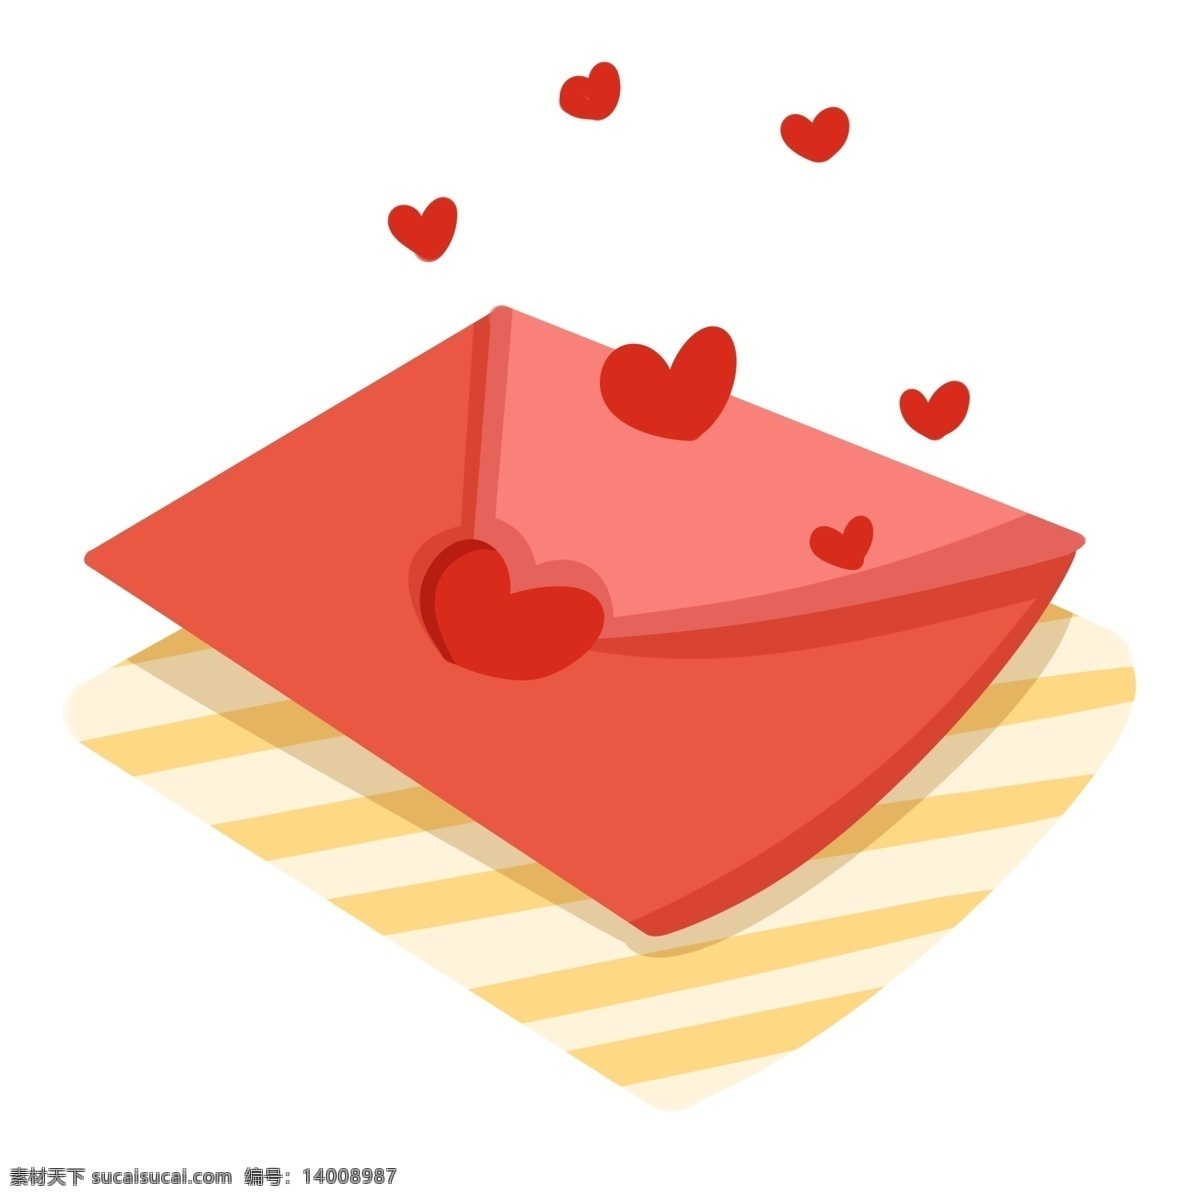 手绘 情人节 情书 插画 红色纸 红色爱心 浪漫 爱情 红心 手绘情书 信件 黄色条纹信封 表白书信